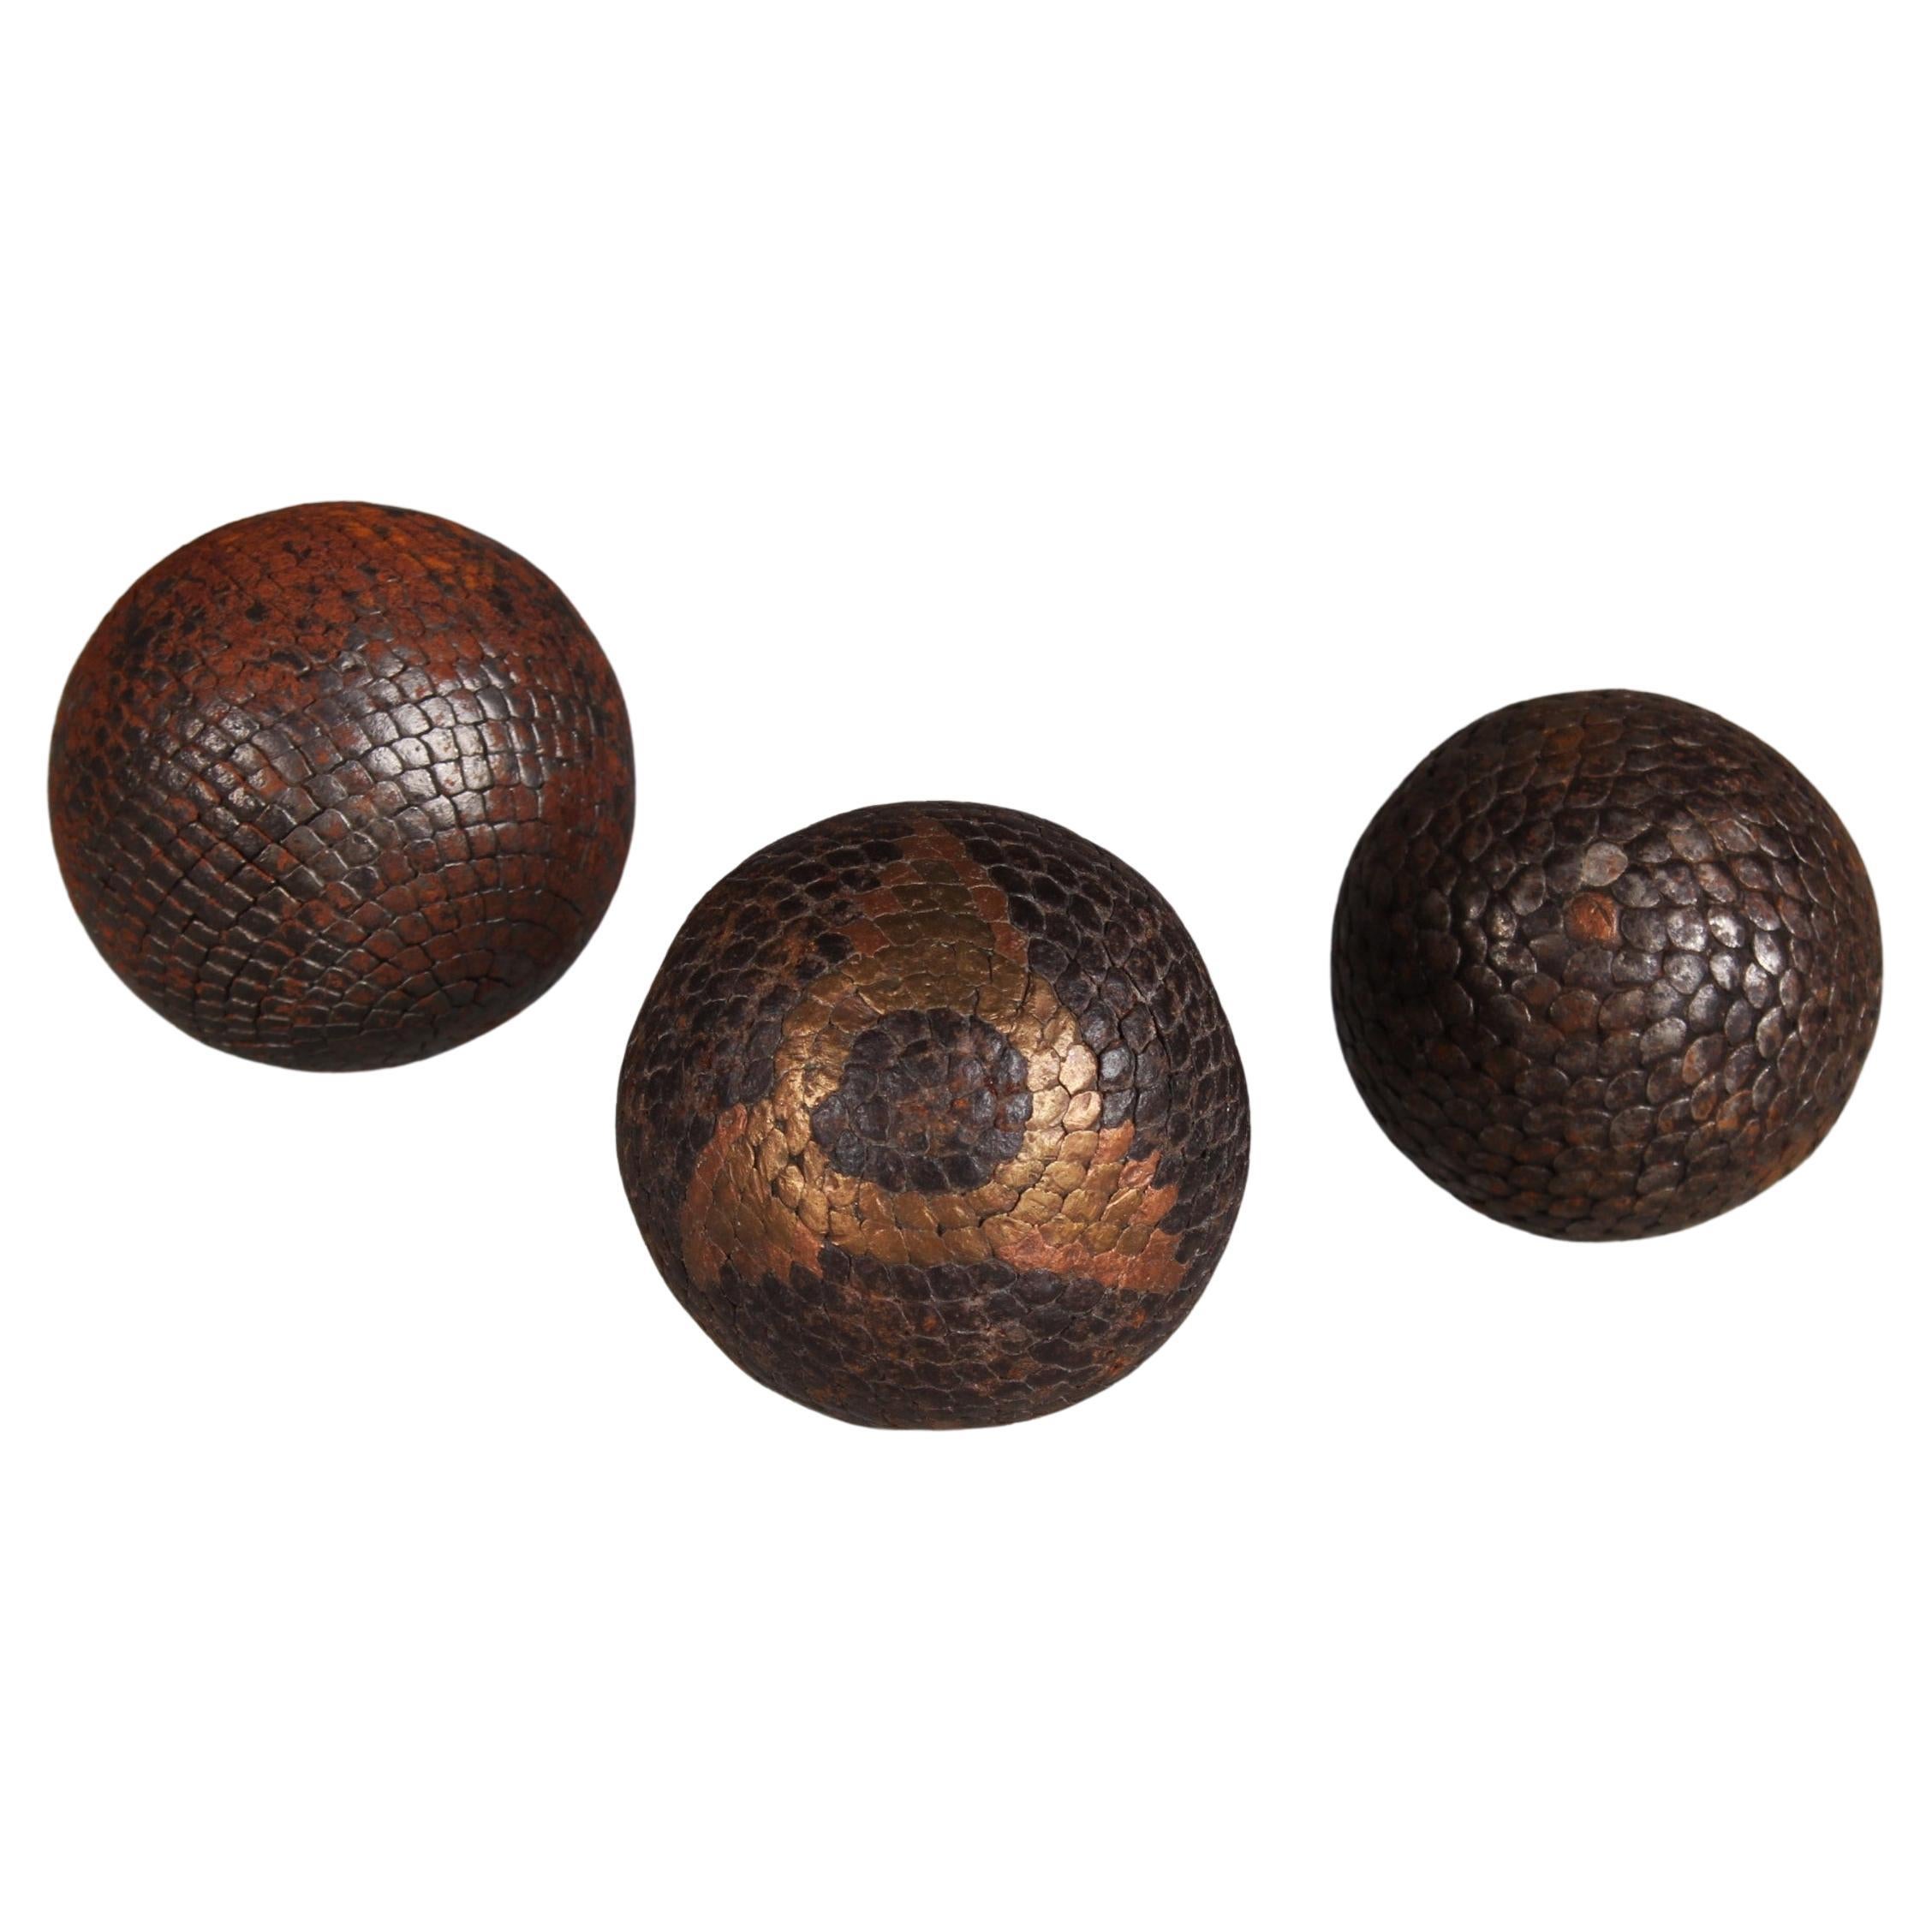 Antique Boule Balls Set "B", Pétanque, 1880s, France, Craftsmanship